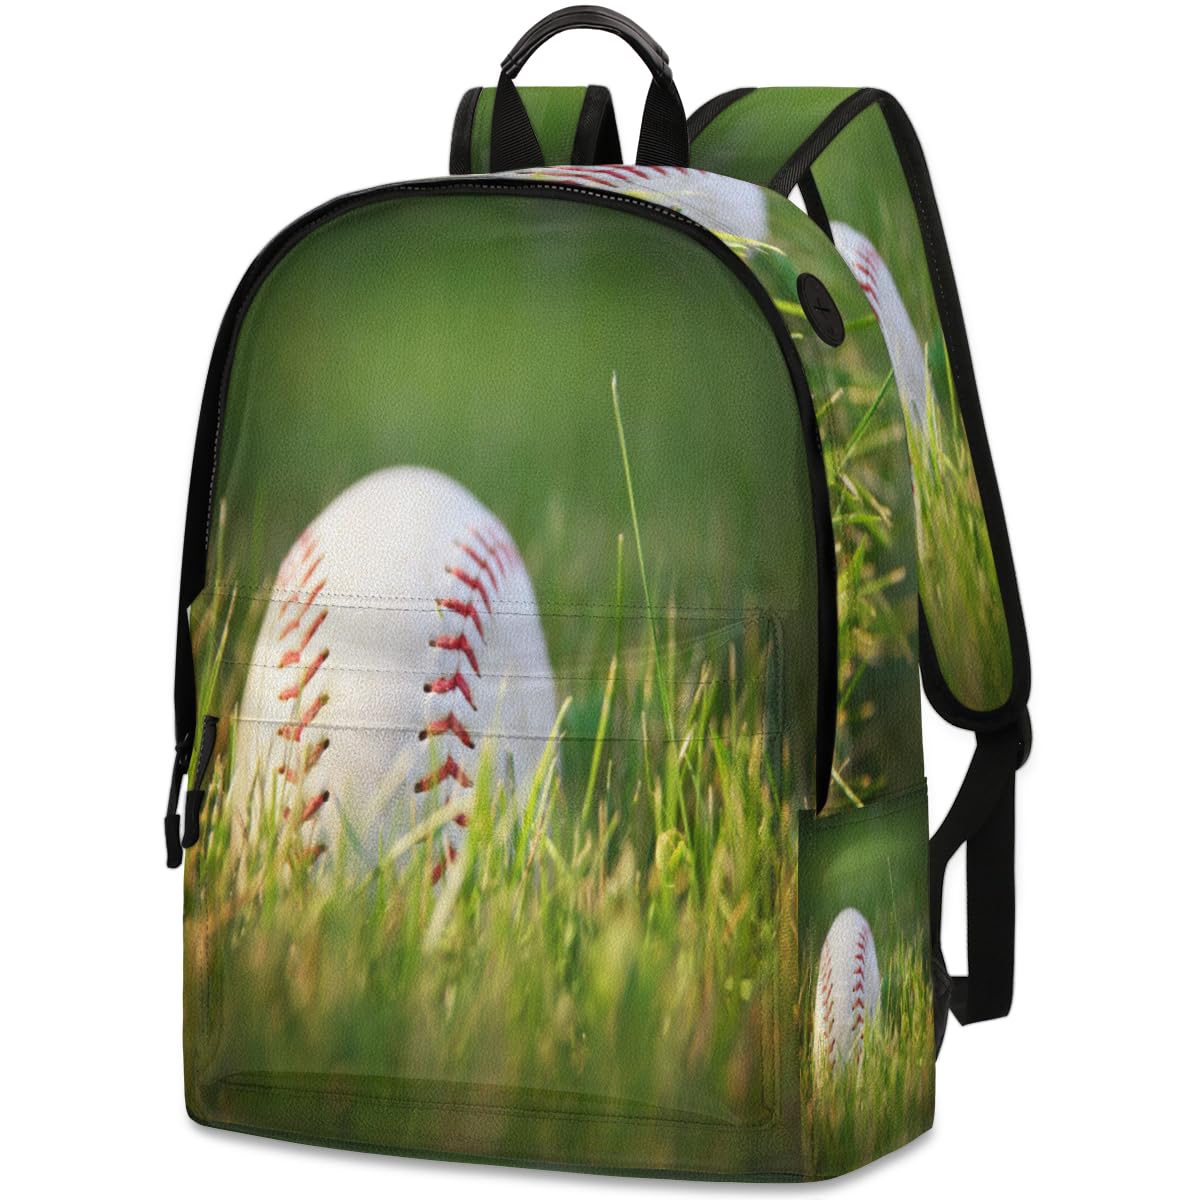 送料無料QsirBC Sports Baseballs Grass Leather Backpack for Women Laptop Backpack Zipper Closure Adjustable Strap Daypack